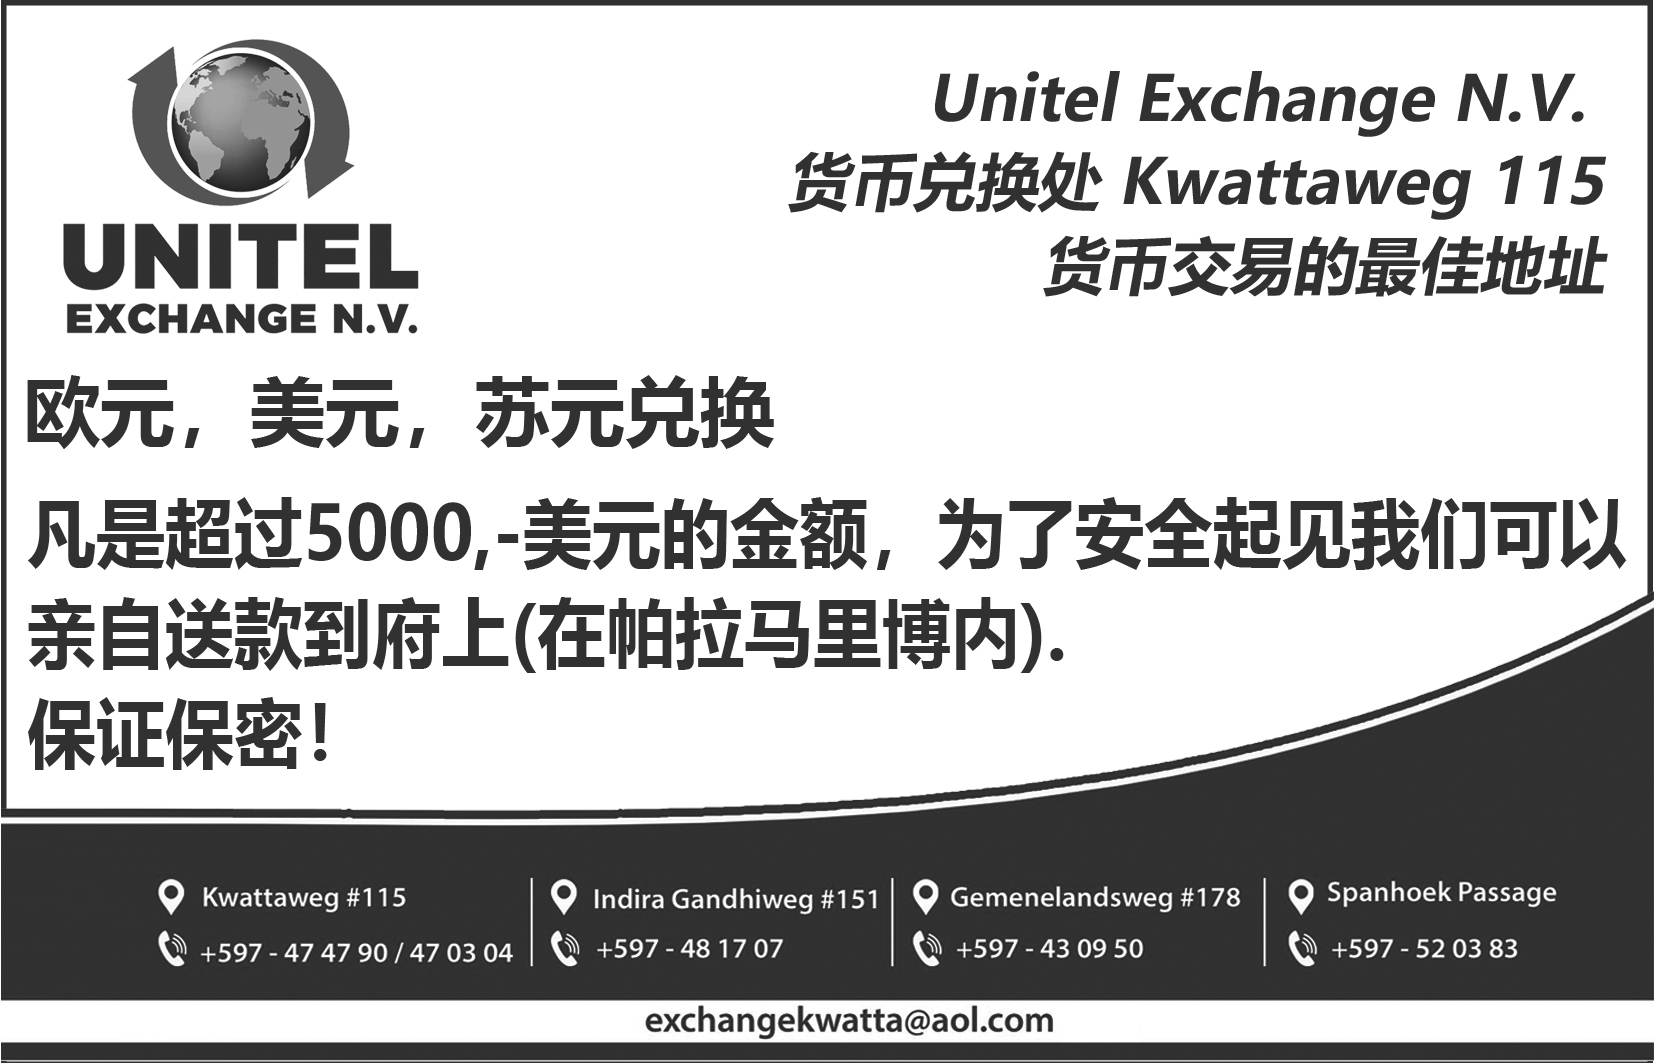 Unitel Exchange nv_9x14cm_blw (2).jpg